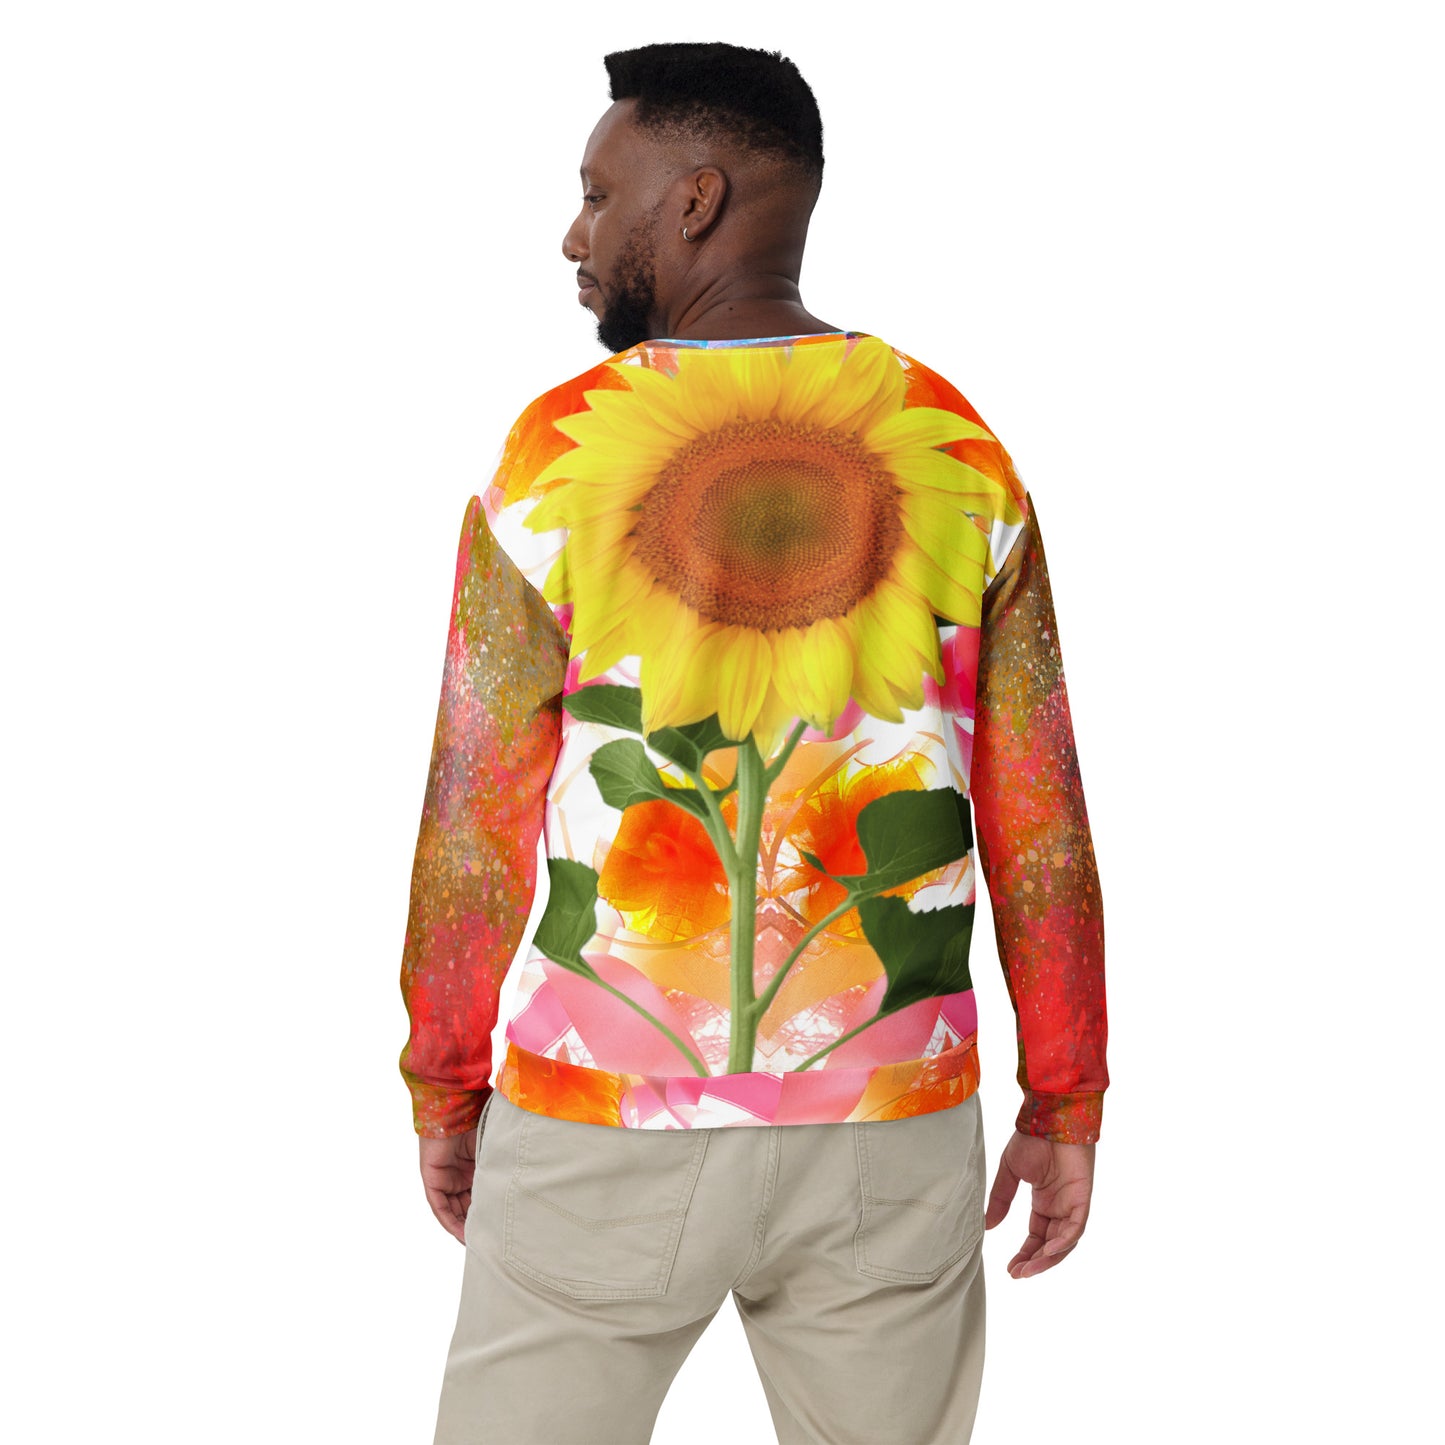 Sunflowery Day Sweatshirt